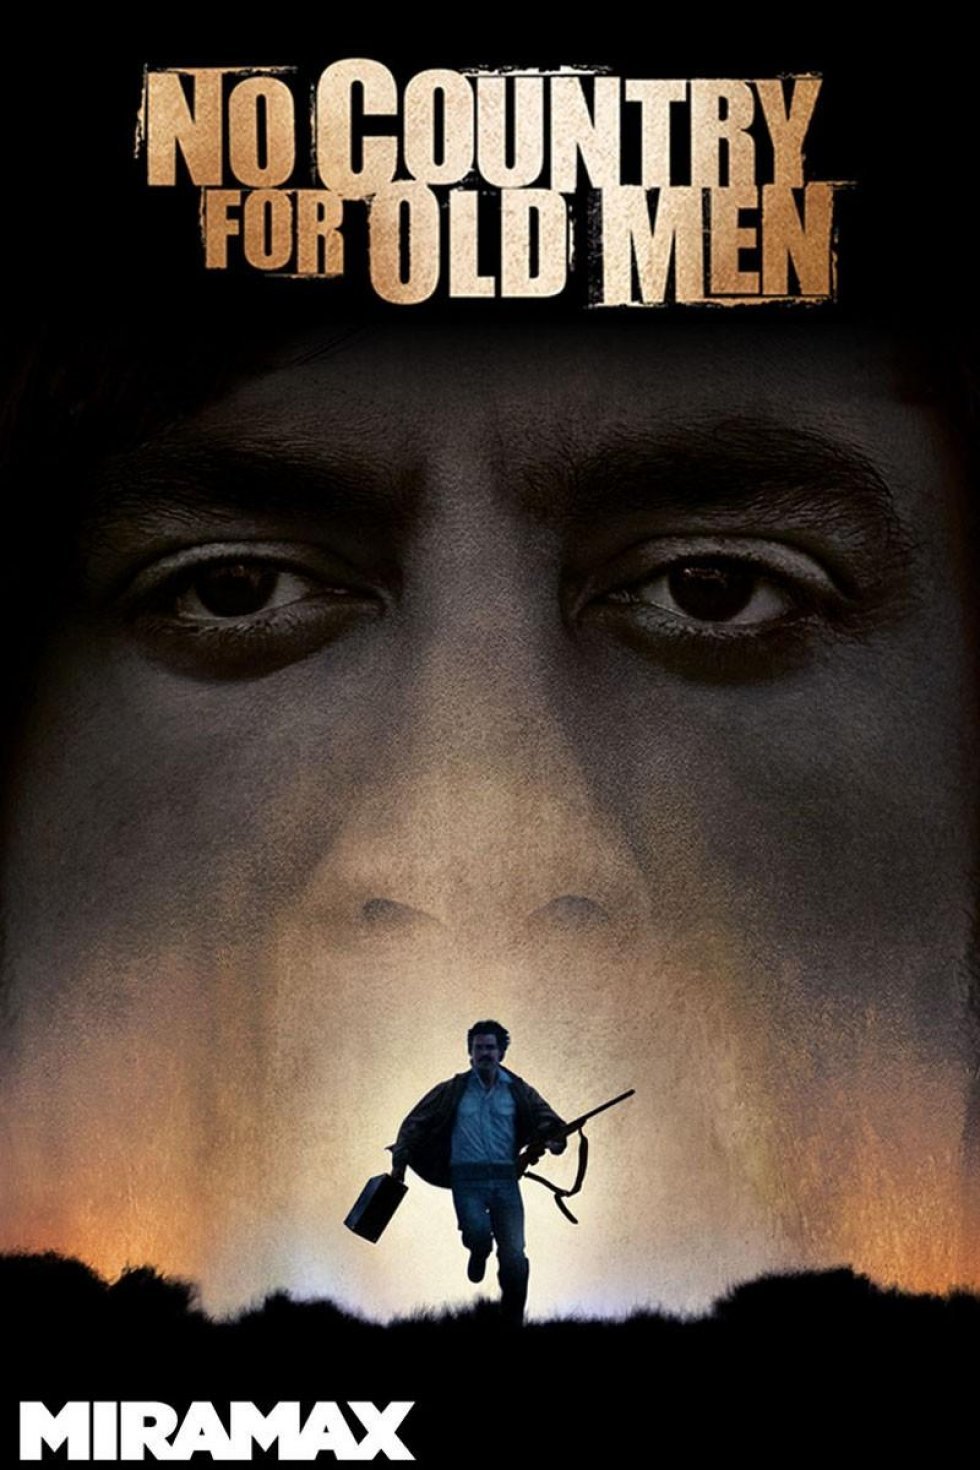 10 film om mænd, alle mænd skal se, inden de dør